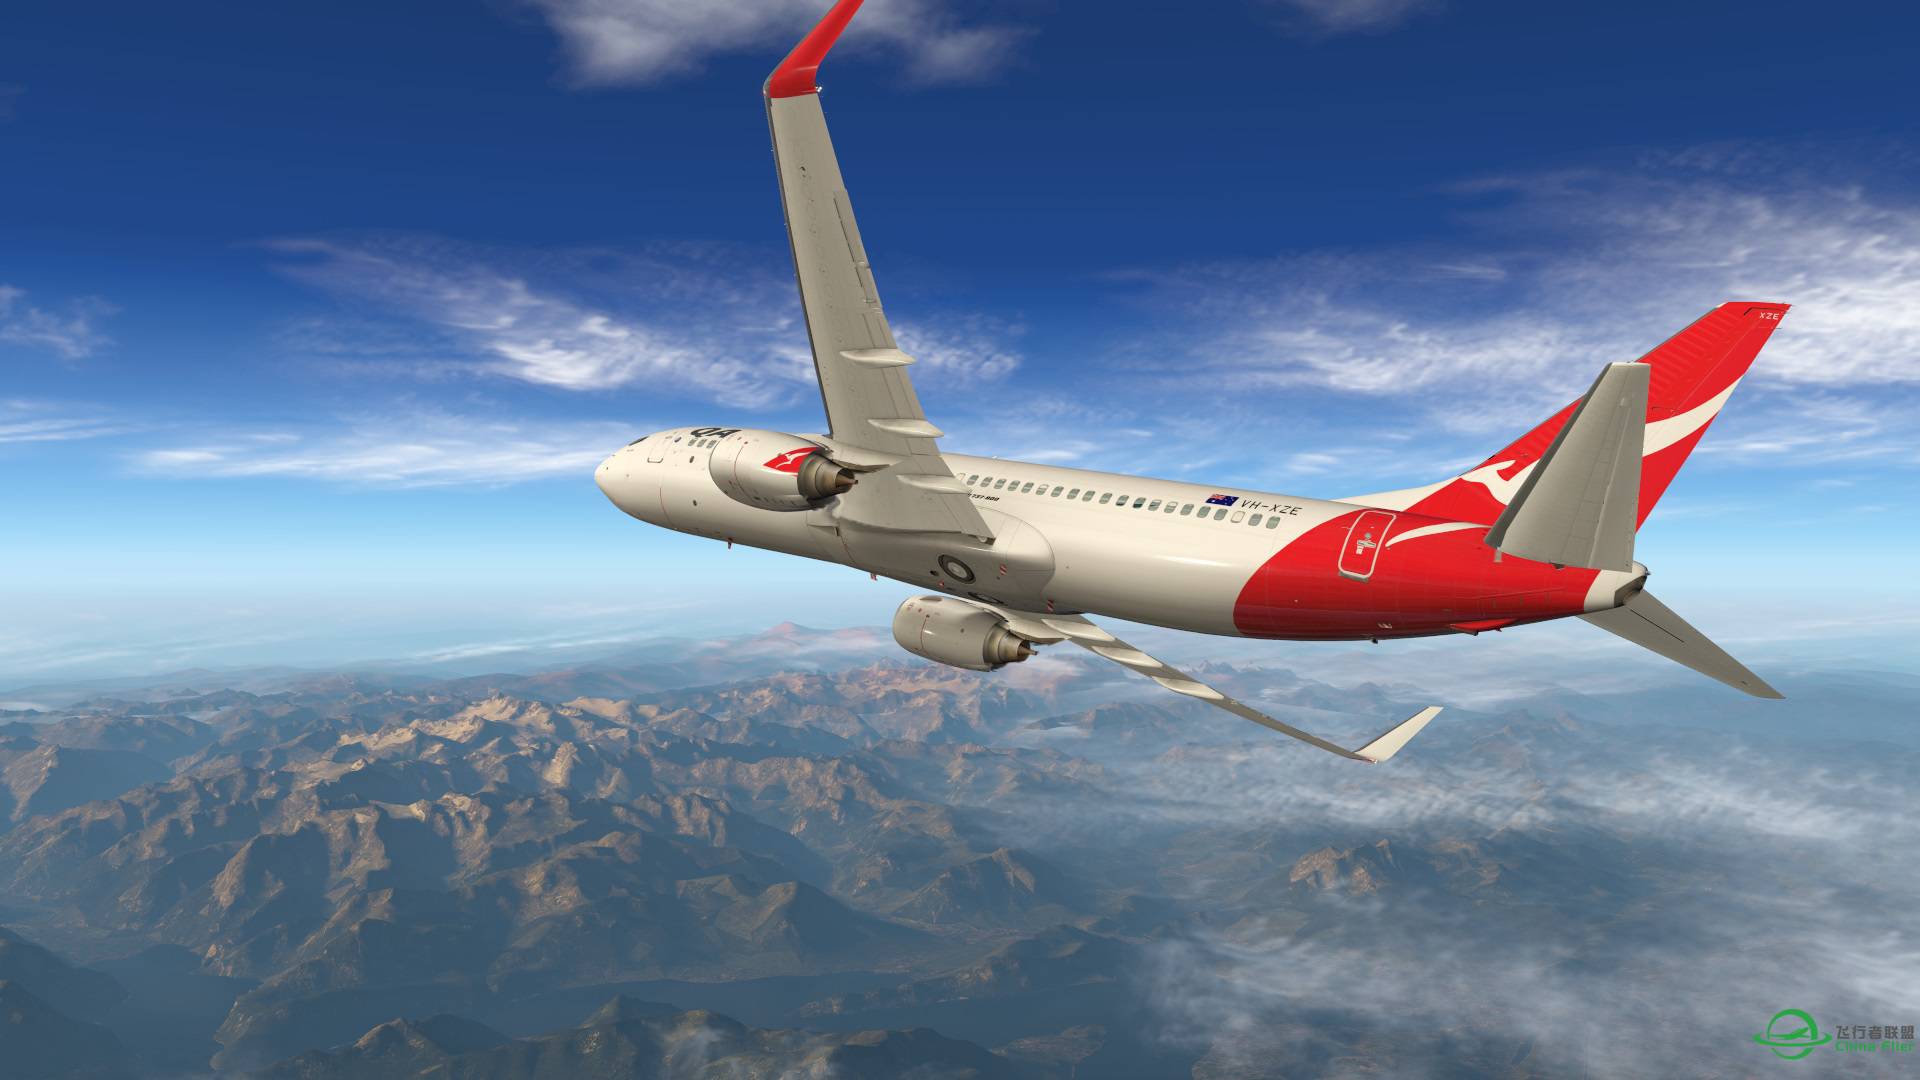 飞跃阿尔卑斯山 X-plane 11-1064 